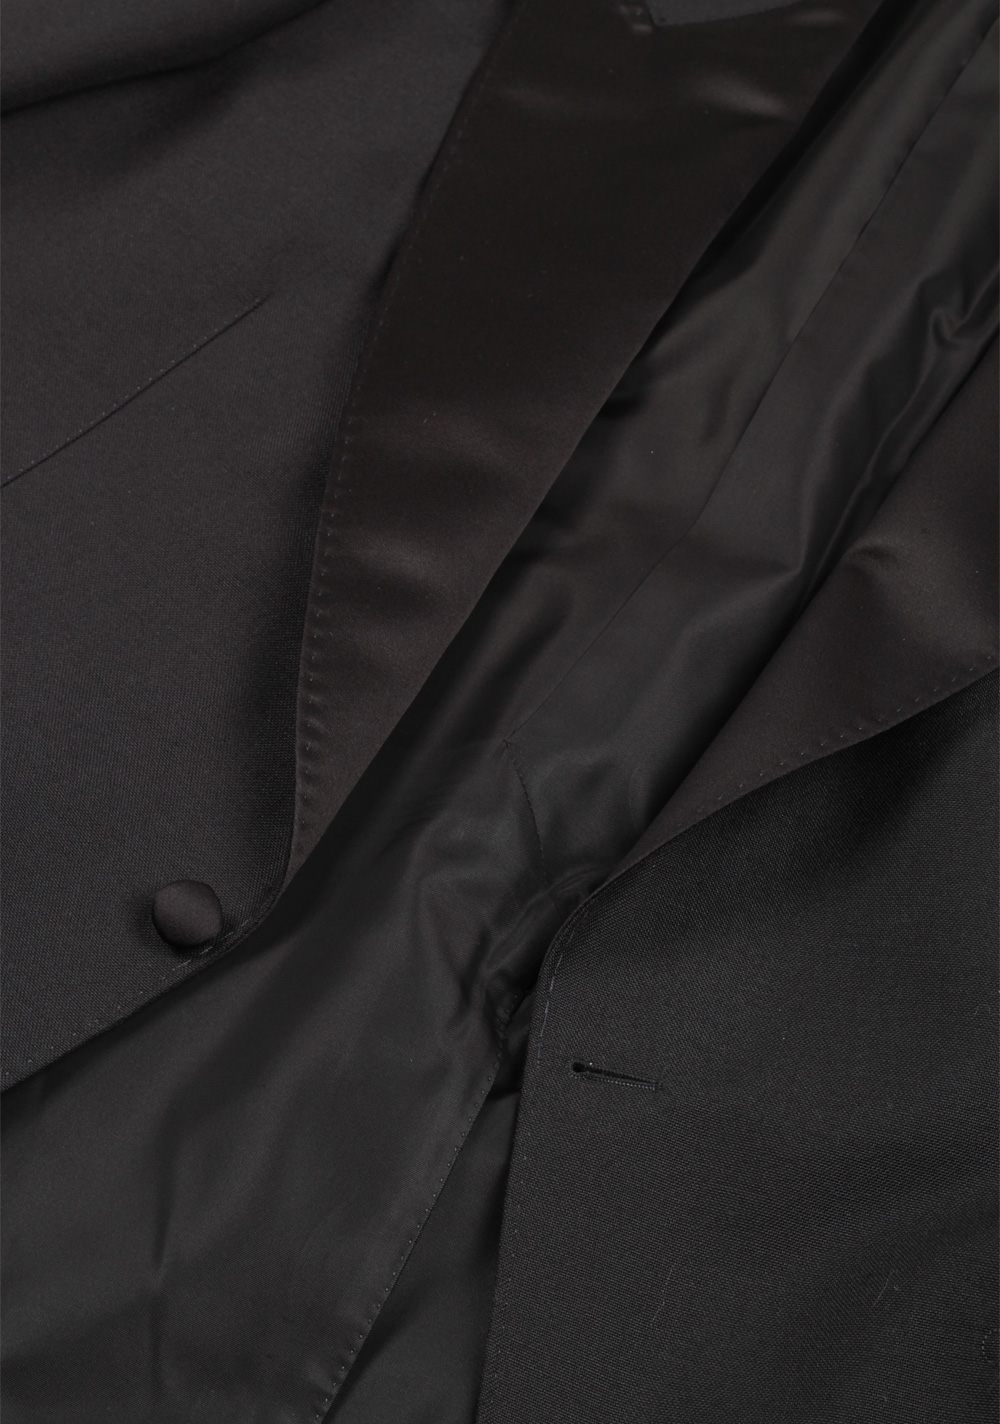 TOM FORD Shelton Black Tuxedo Suit Size 56 / 46R U.S. | Costume Limité